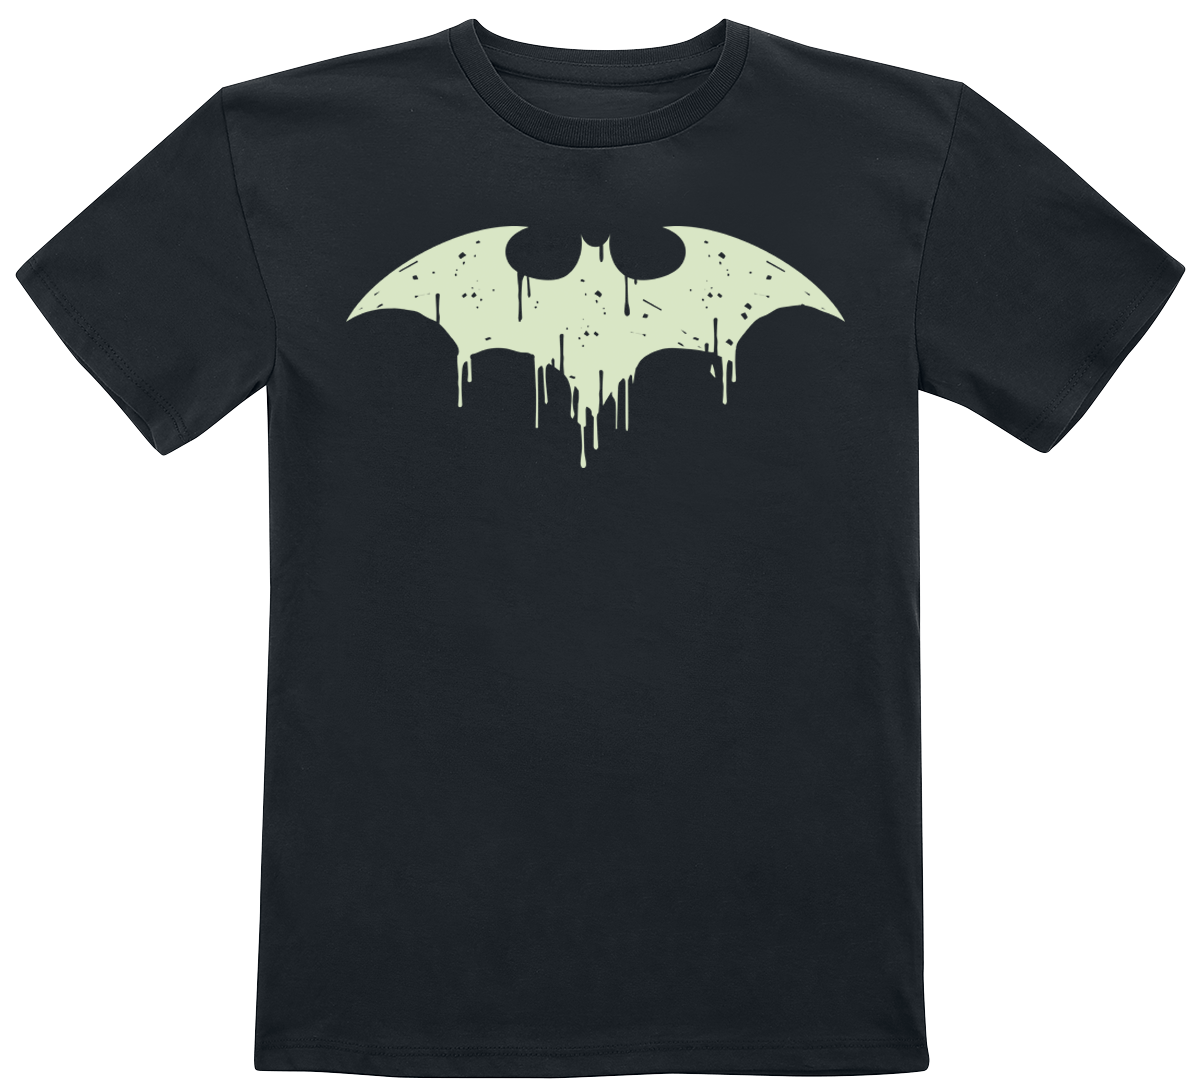 Batman - DC Comics T-Shirt für Kleinkinder - Kids - GITD logo - für Mädchen & Jungen - schwarz  - EMP exklusives Merchandise! von Batman